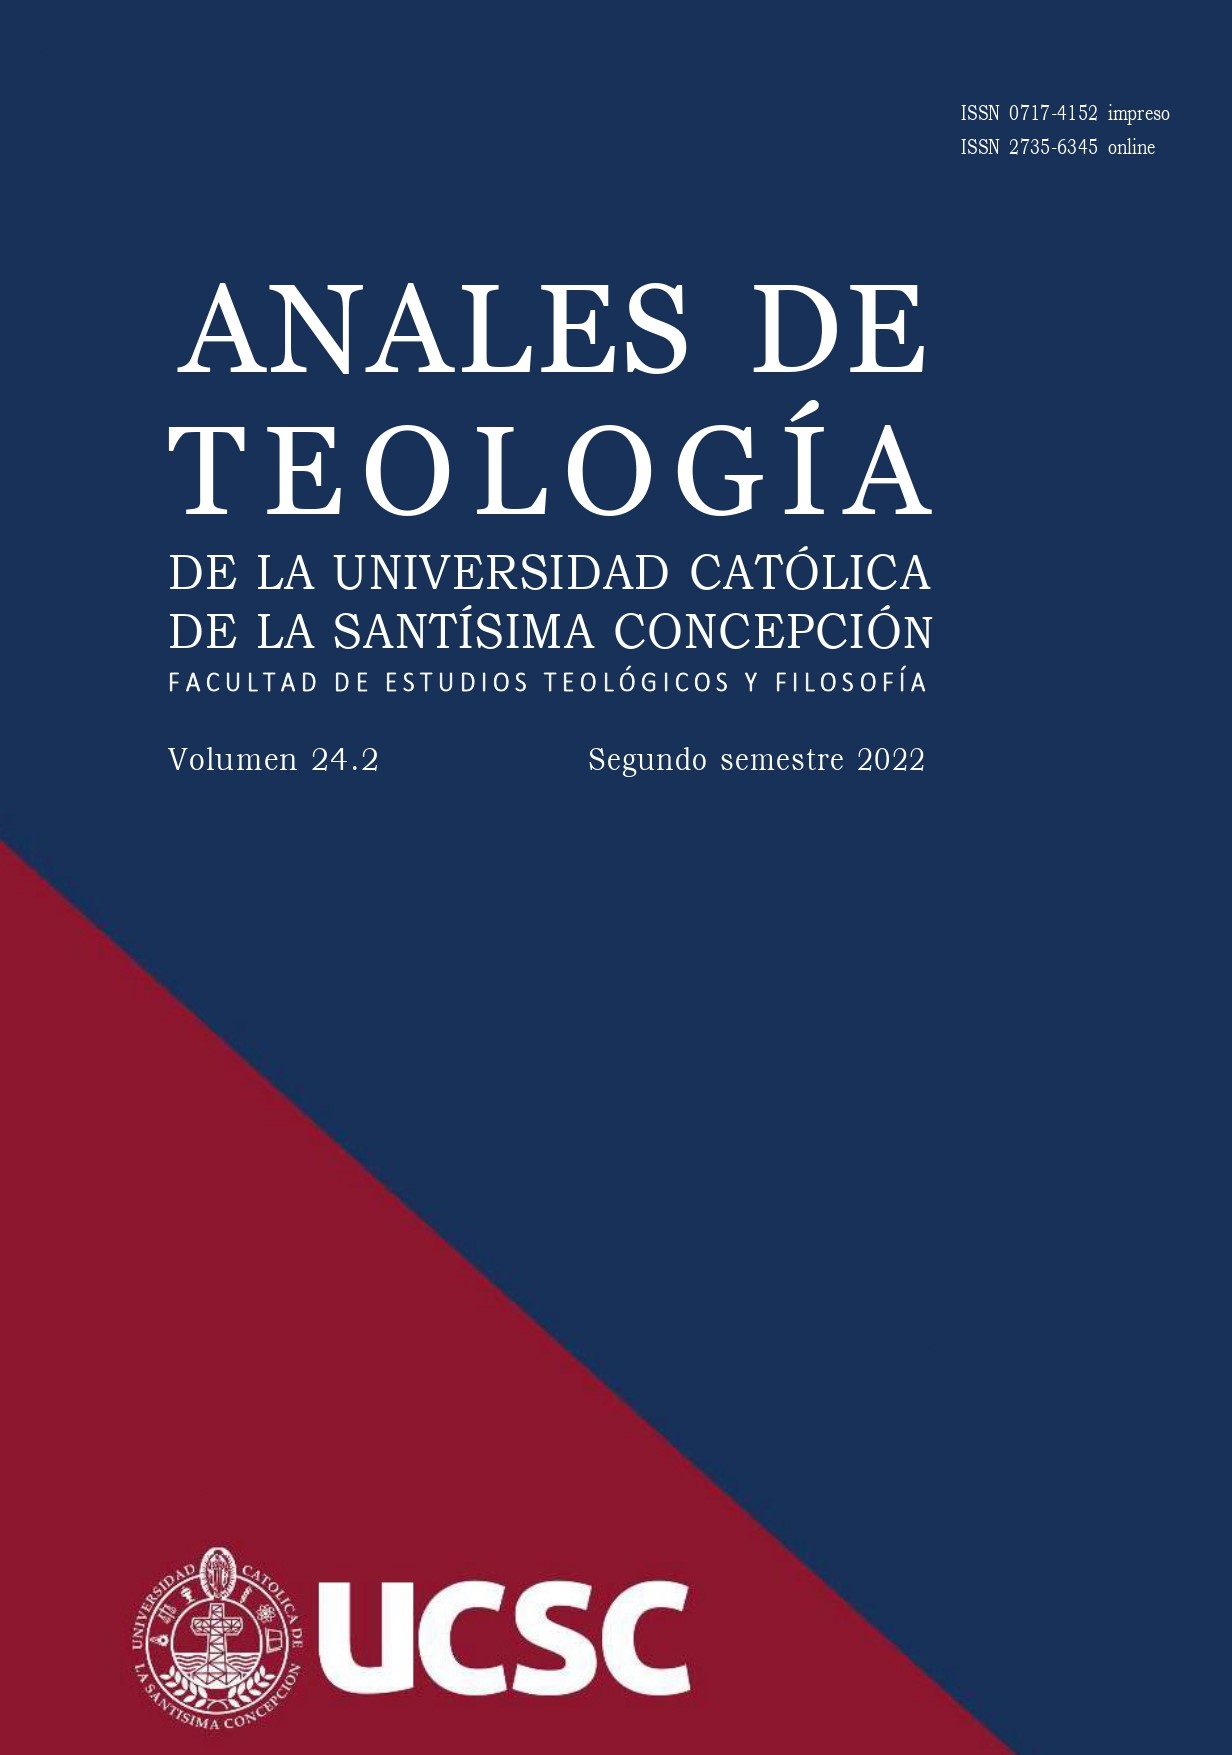 					Ver Vol. 15 Núm. 1 (2013): Anales de Teología | Enero - Junio 2013
				